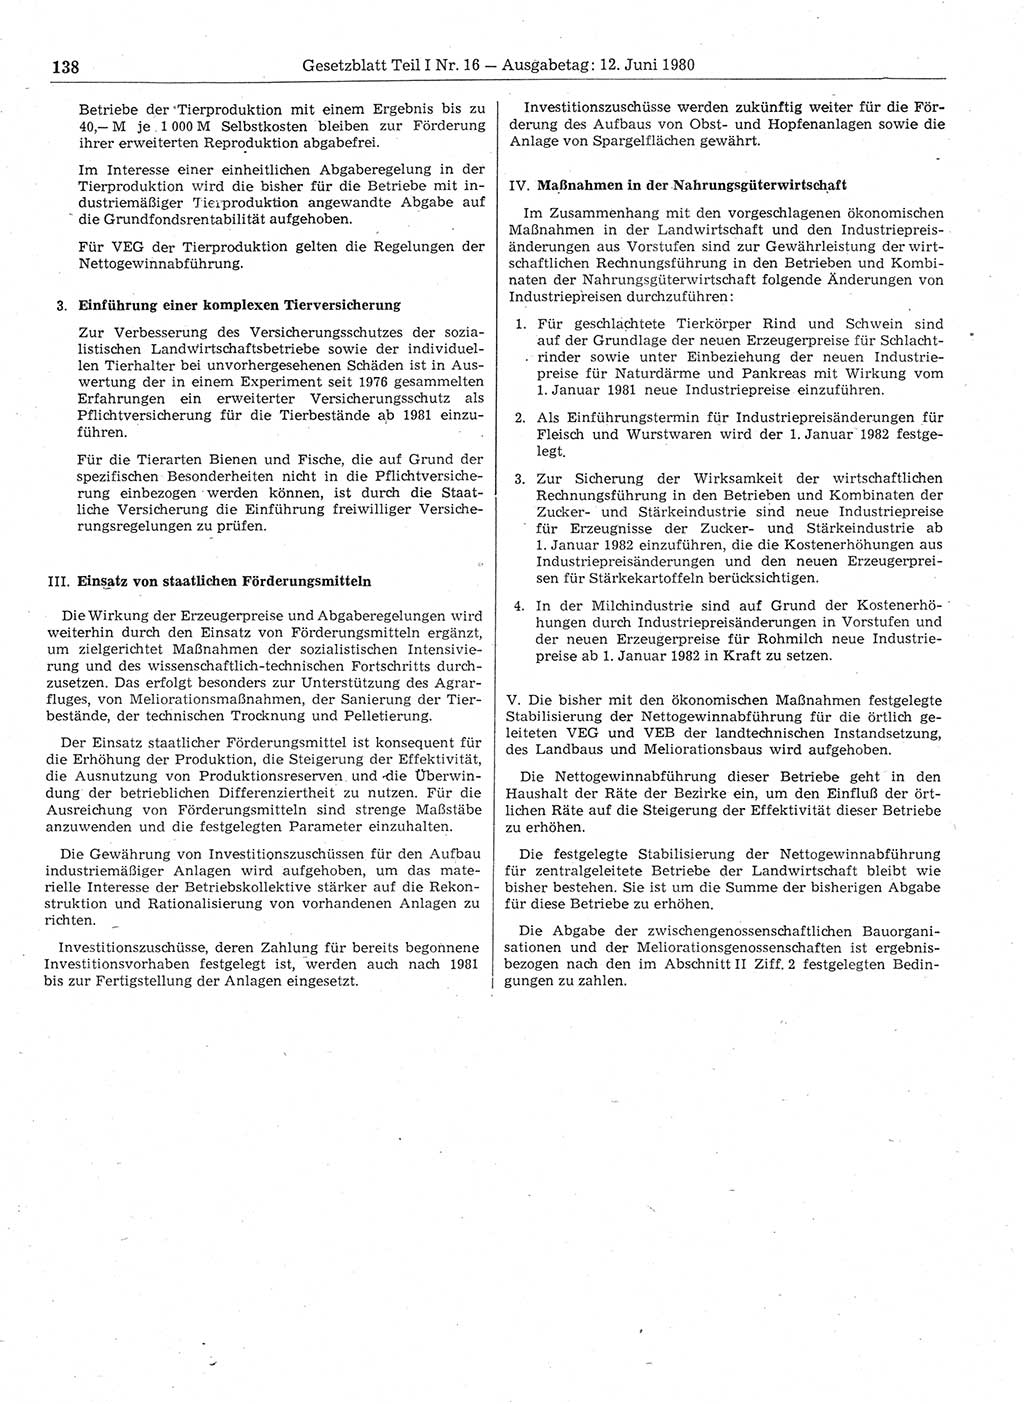 Gesetzblatt (GBl.) der Deutschen Demokratischen Republik (DDR) Teil Ⅰ 1980, Seite 138 (GBl. DDR Ⅰ 1980, S. 138)